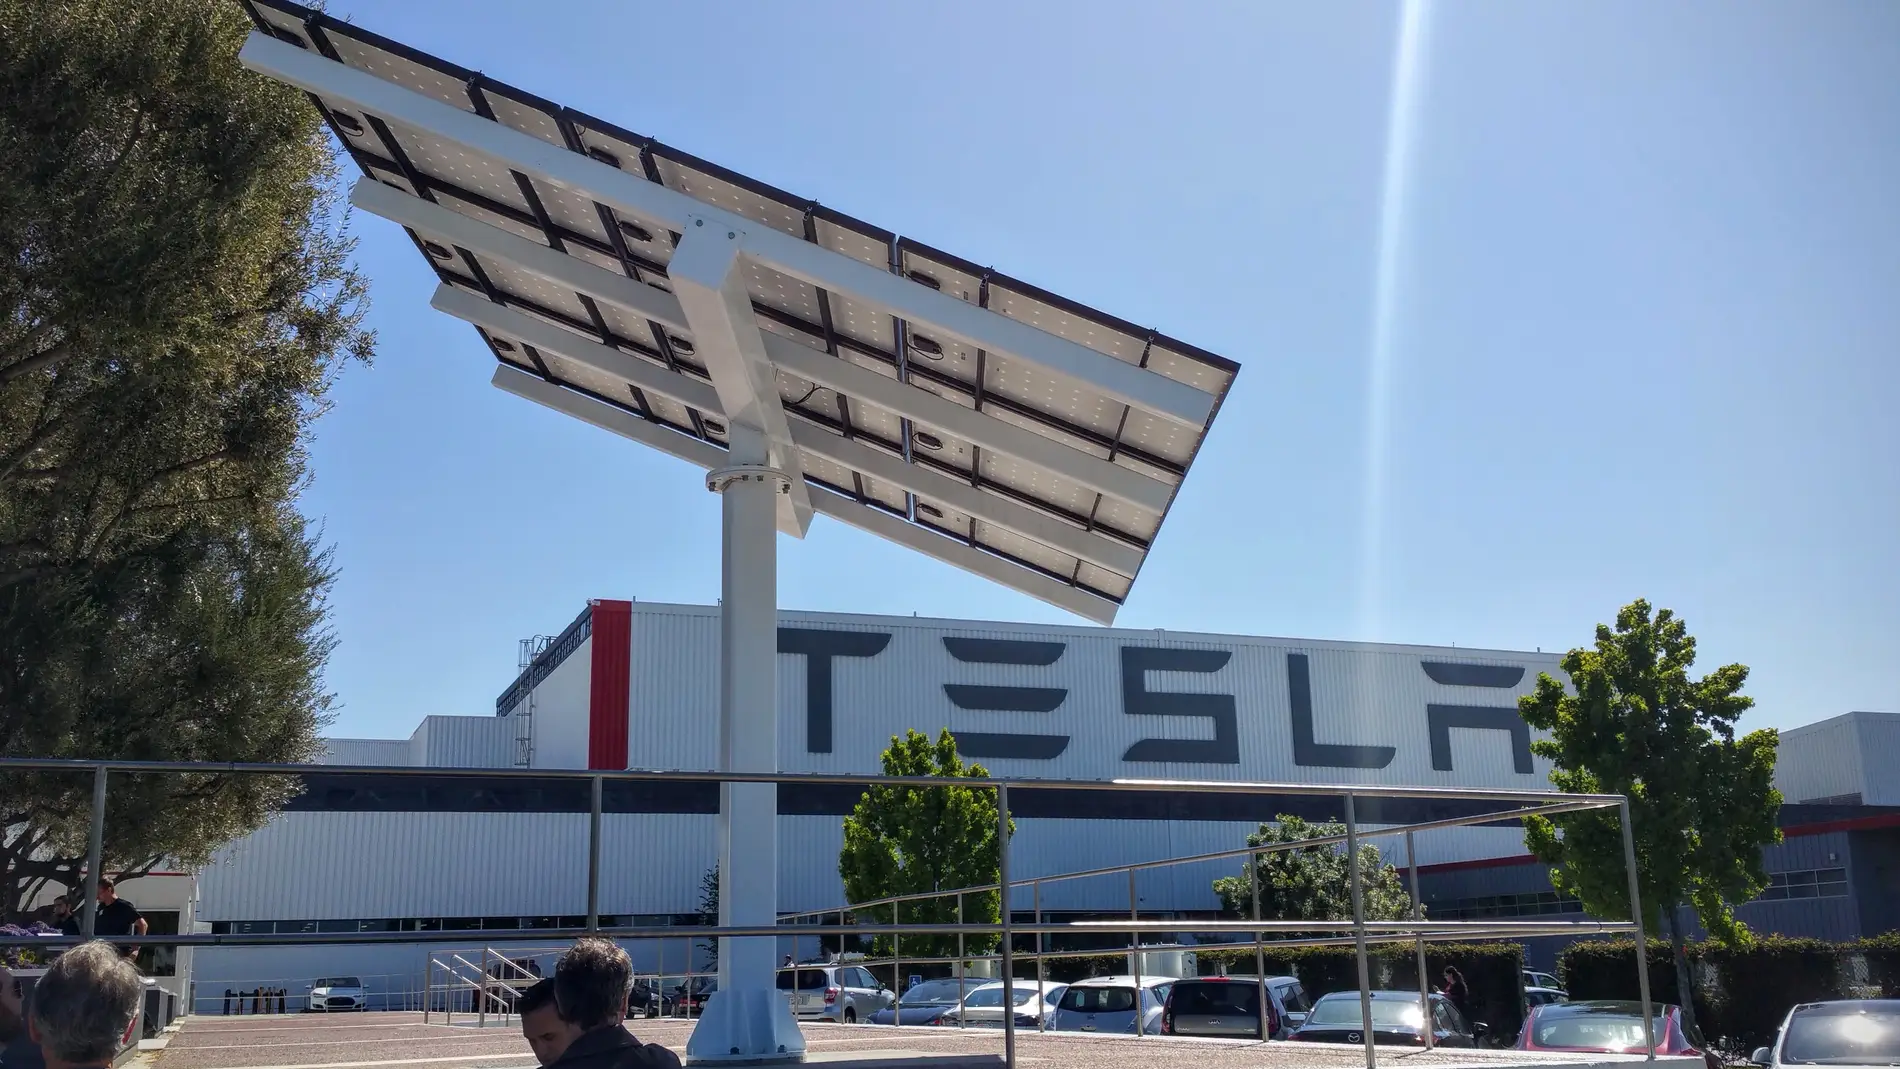 Fábrica de Tesla